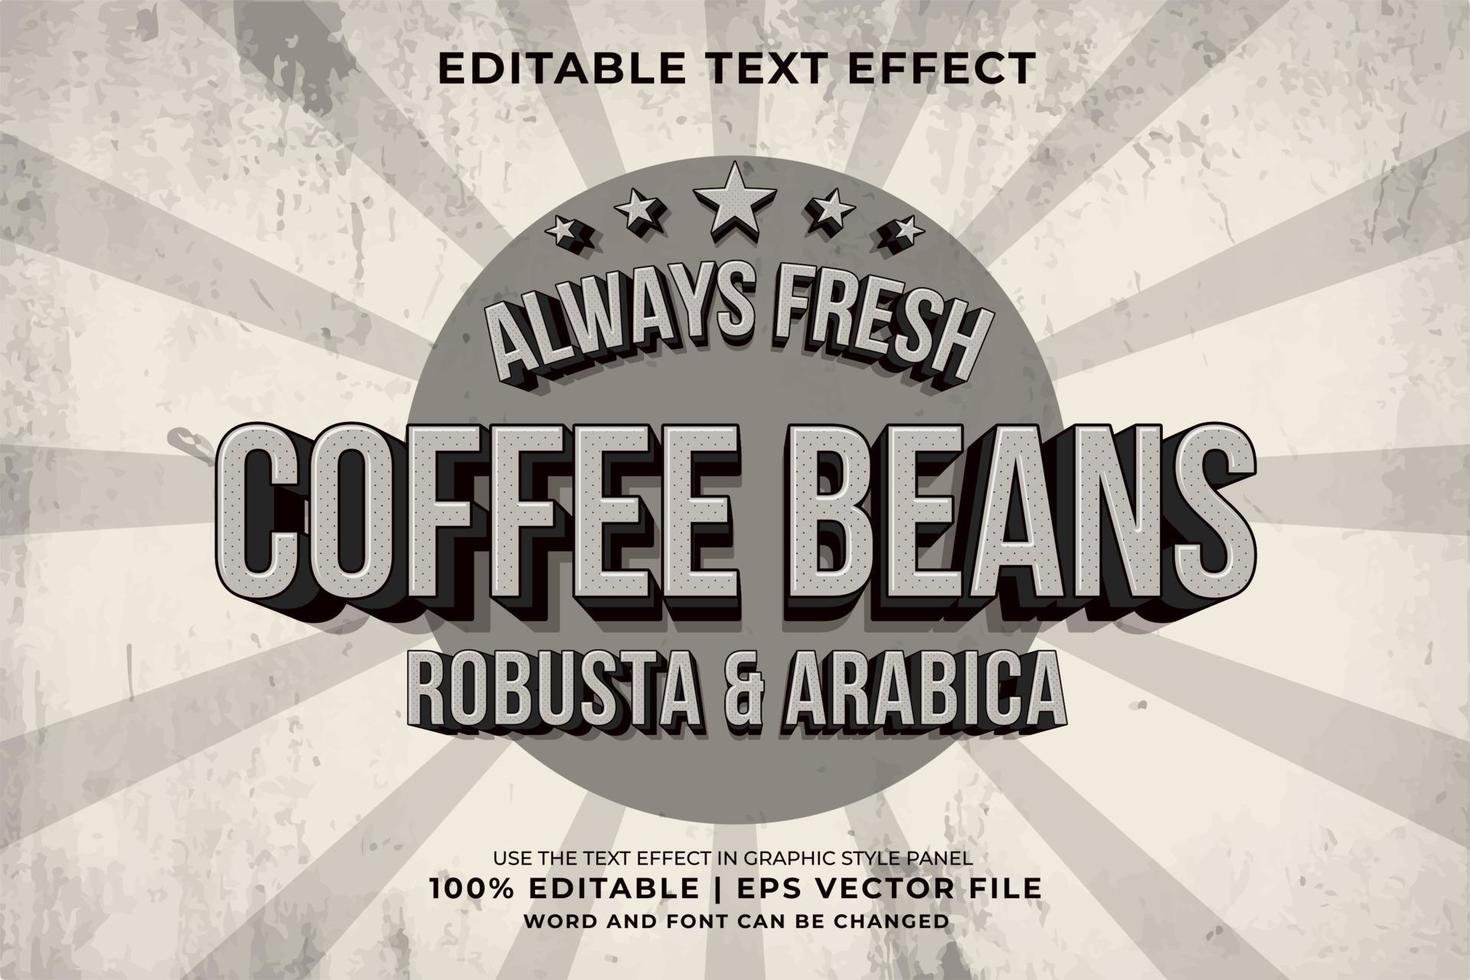 efeito de texto editável - vetor premium de estilo de modelo retrô de grãos de café